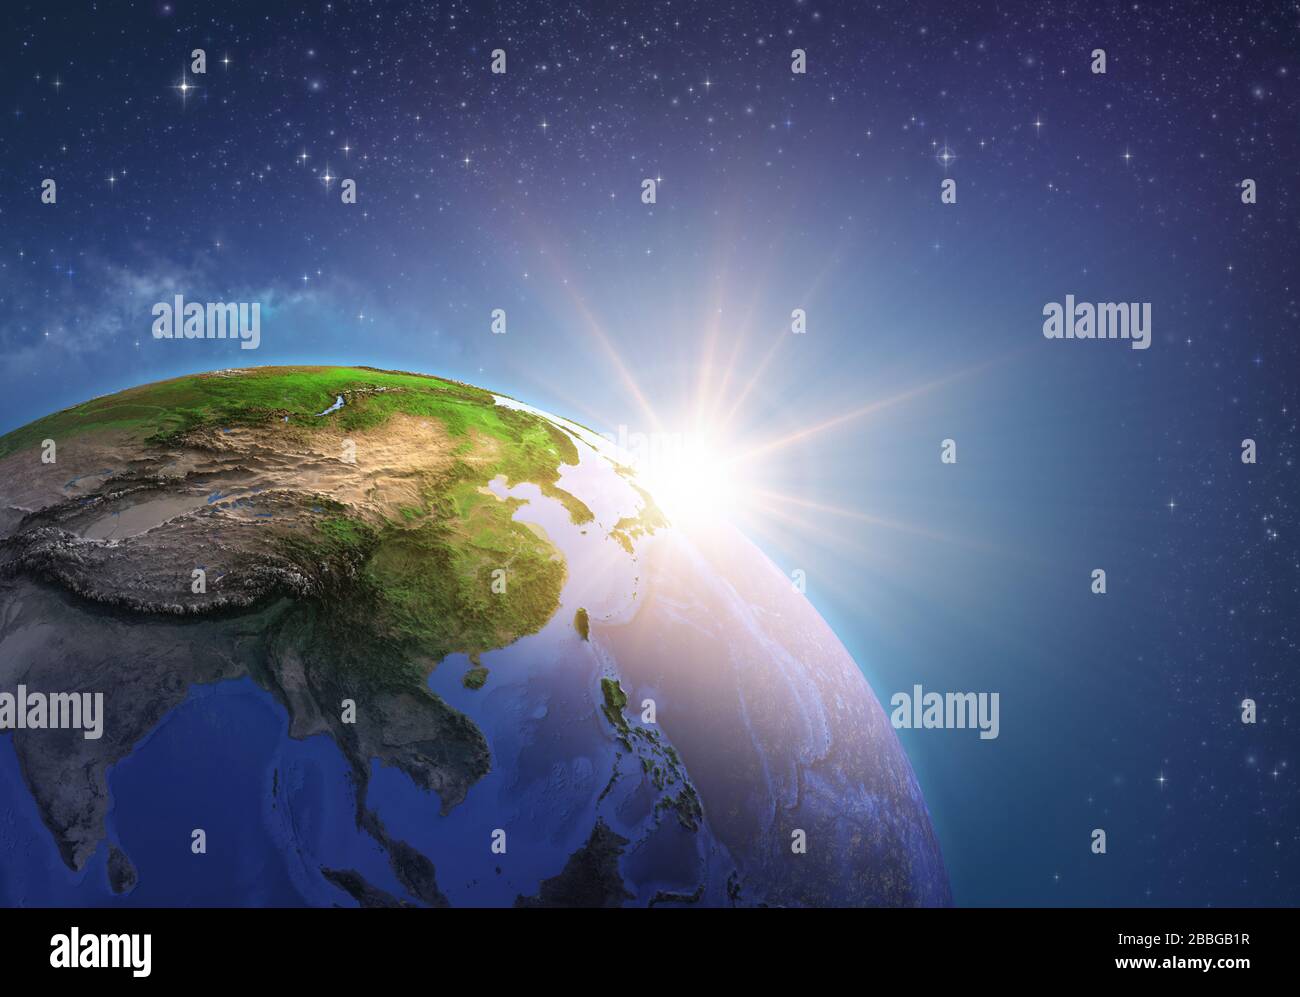 Oberfläche des Planeten Erde von einem Satelliten aus betrachtet, der sich auf Ostasien konzentriert und die Sonne am Horizont aufgeht. Physische Karte von China und der Mongolei. 3D-Illustration Stockfoto